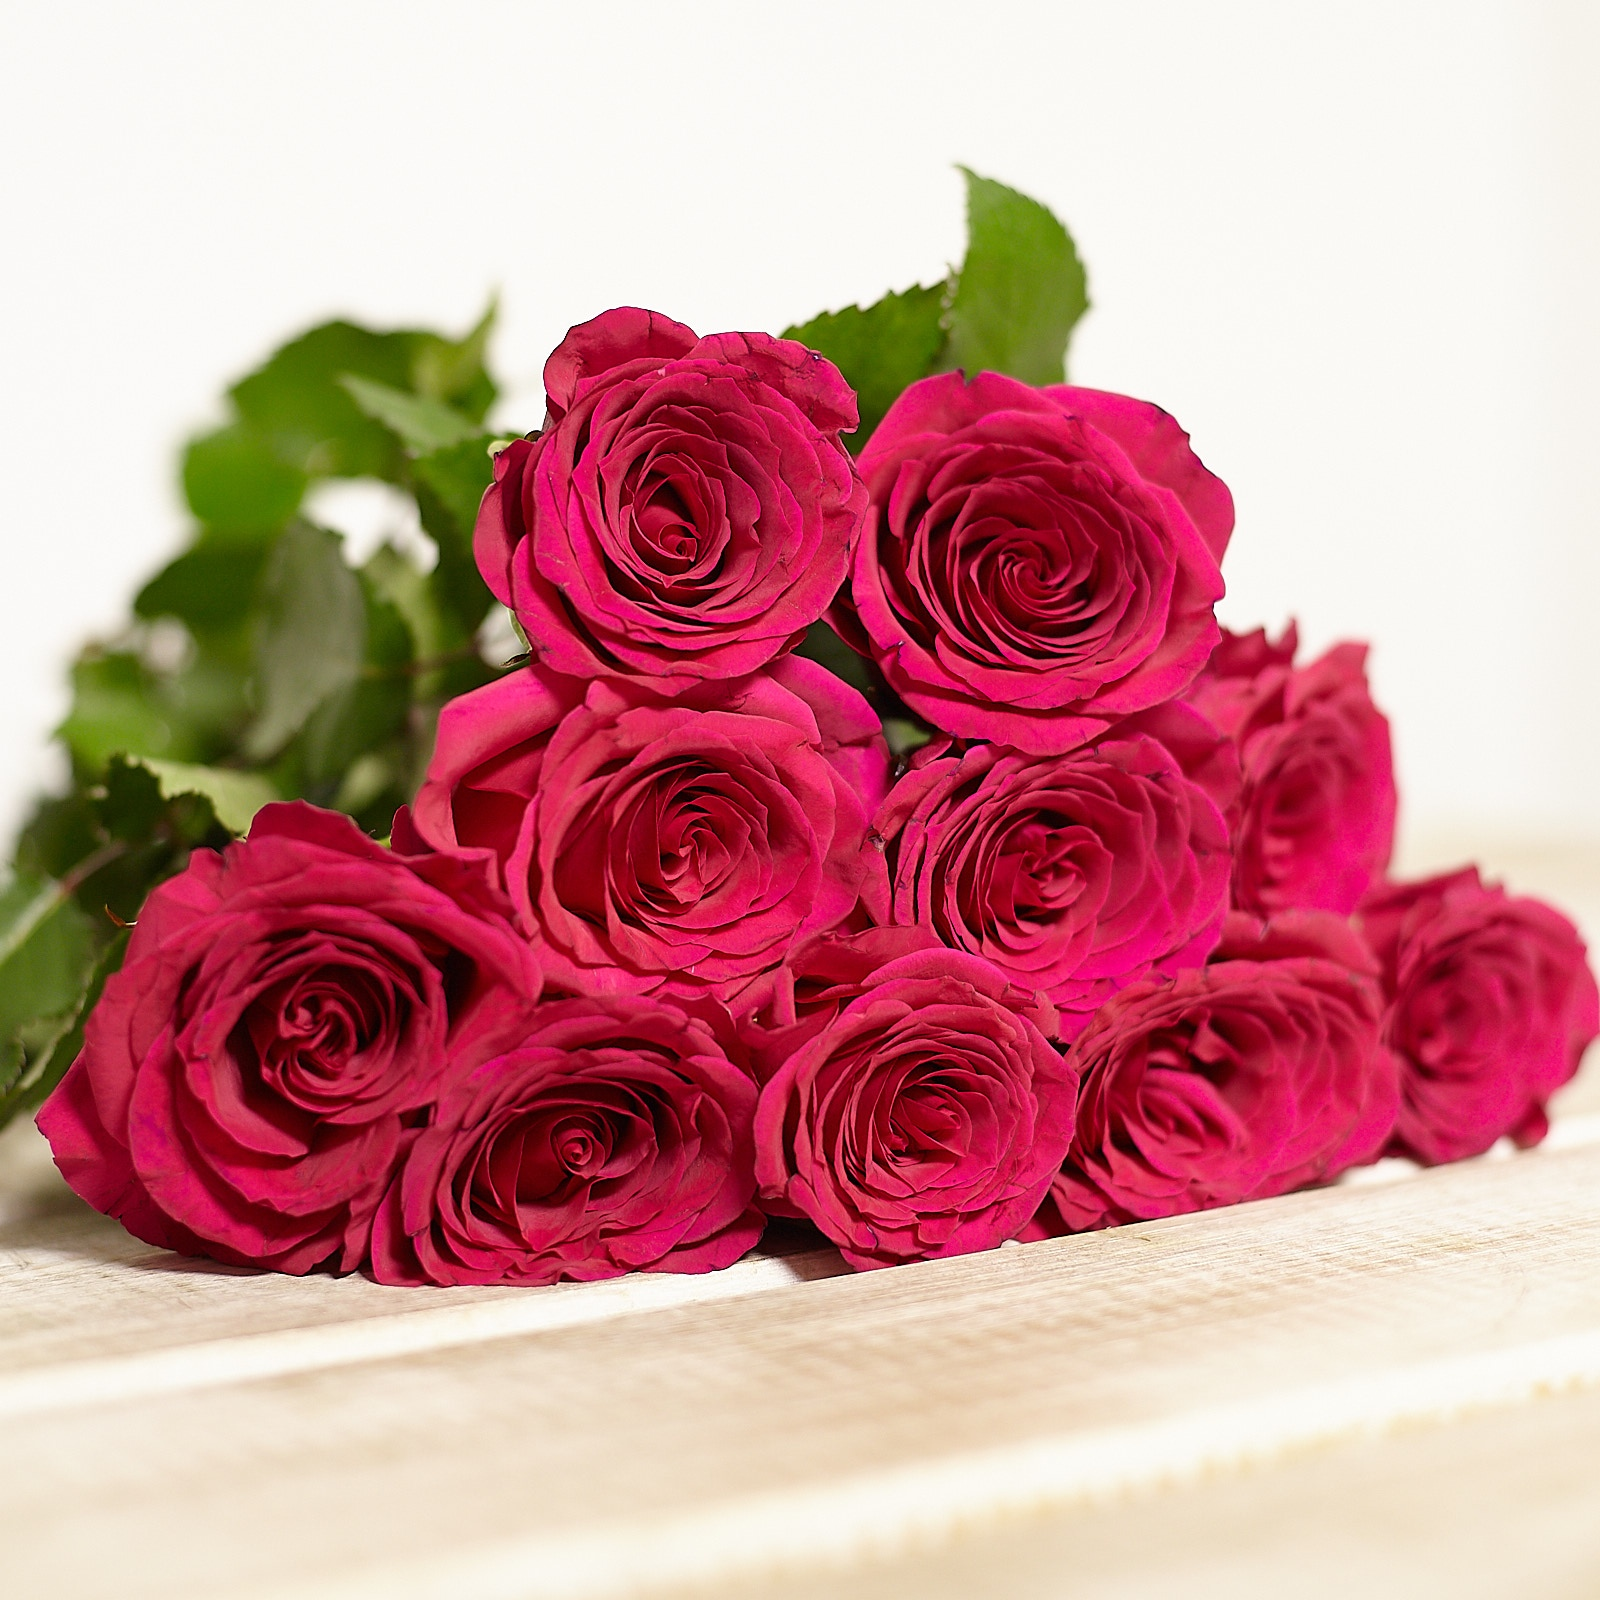 Купите розы 23. 23 Розы букет. 23 Розы розовые. Живые цветы. Розы 23 штуки.